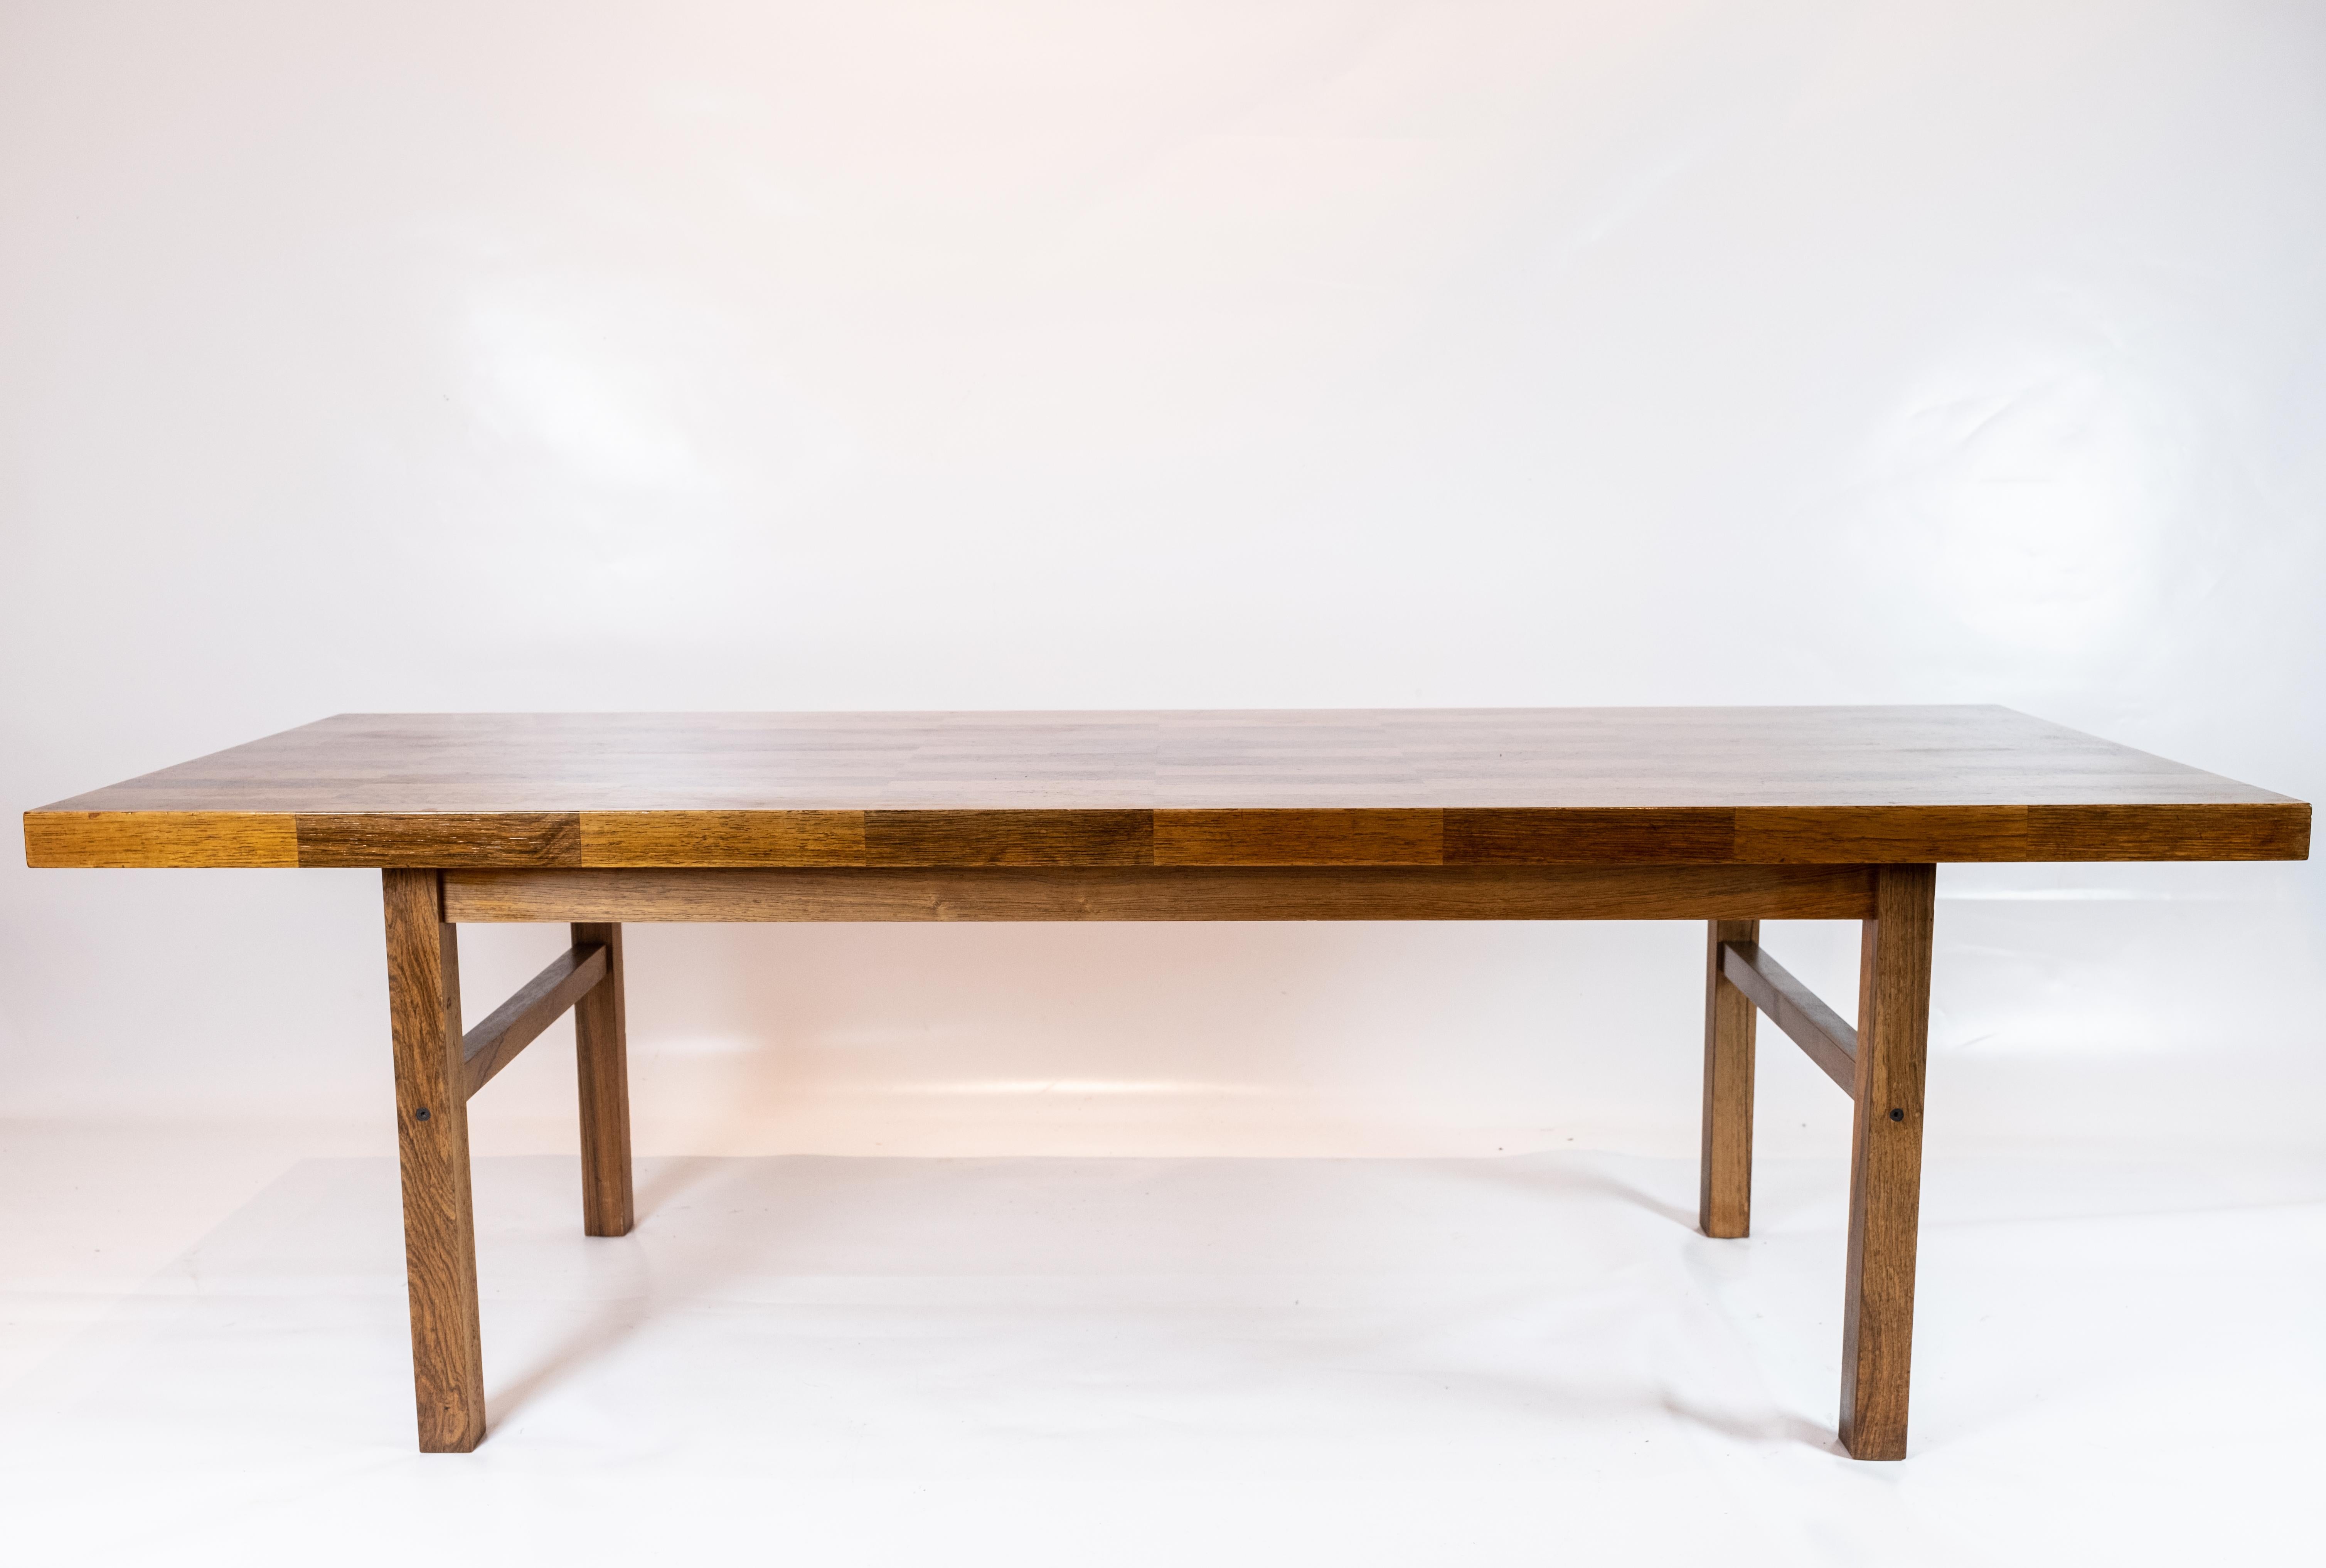 
Cette table basse est un véritable témoignage de l'élégance intemporelle du design danois. Fabriqué à partir d'un riche bois de rose, il respire la chaleur et la sophistication, ce qui en fait une pièce maîtresse éblouissante pour tout